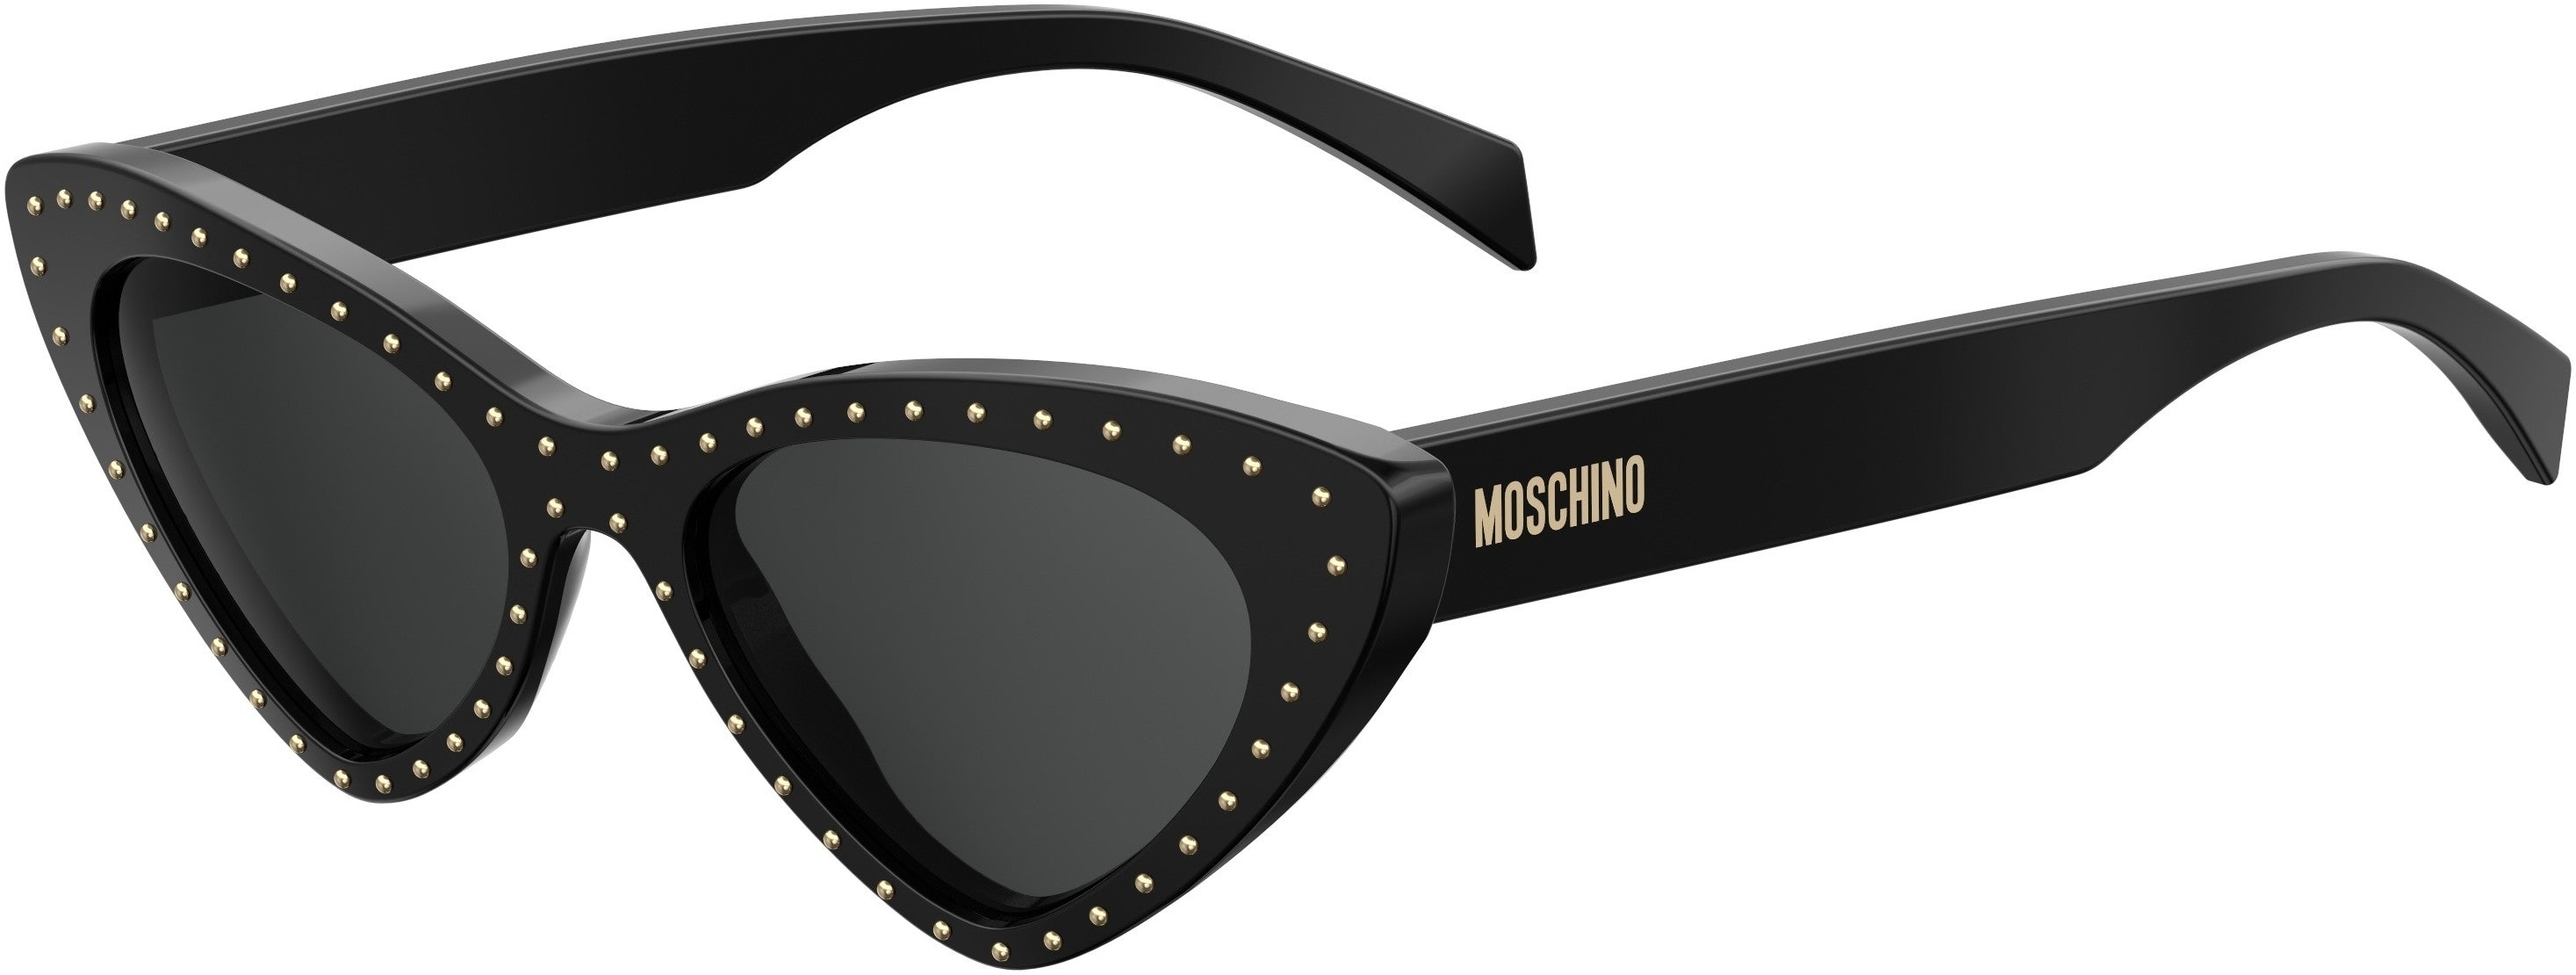  Moschino 006/S Special Shape Sunglasses 0807-0807  Black (IR Gray)